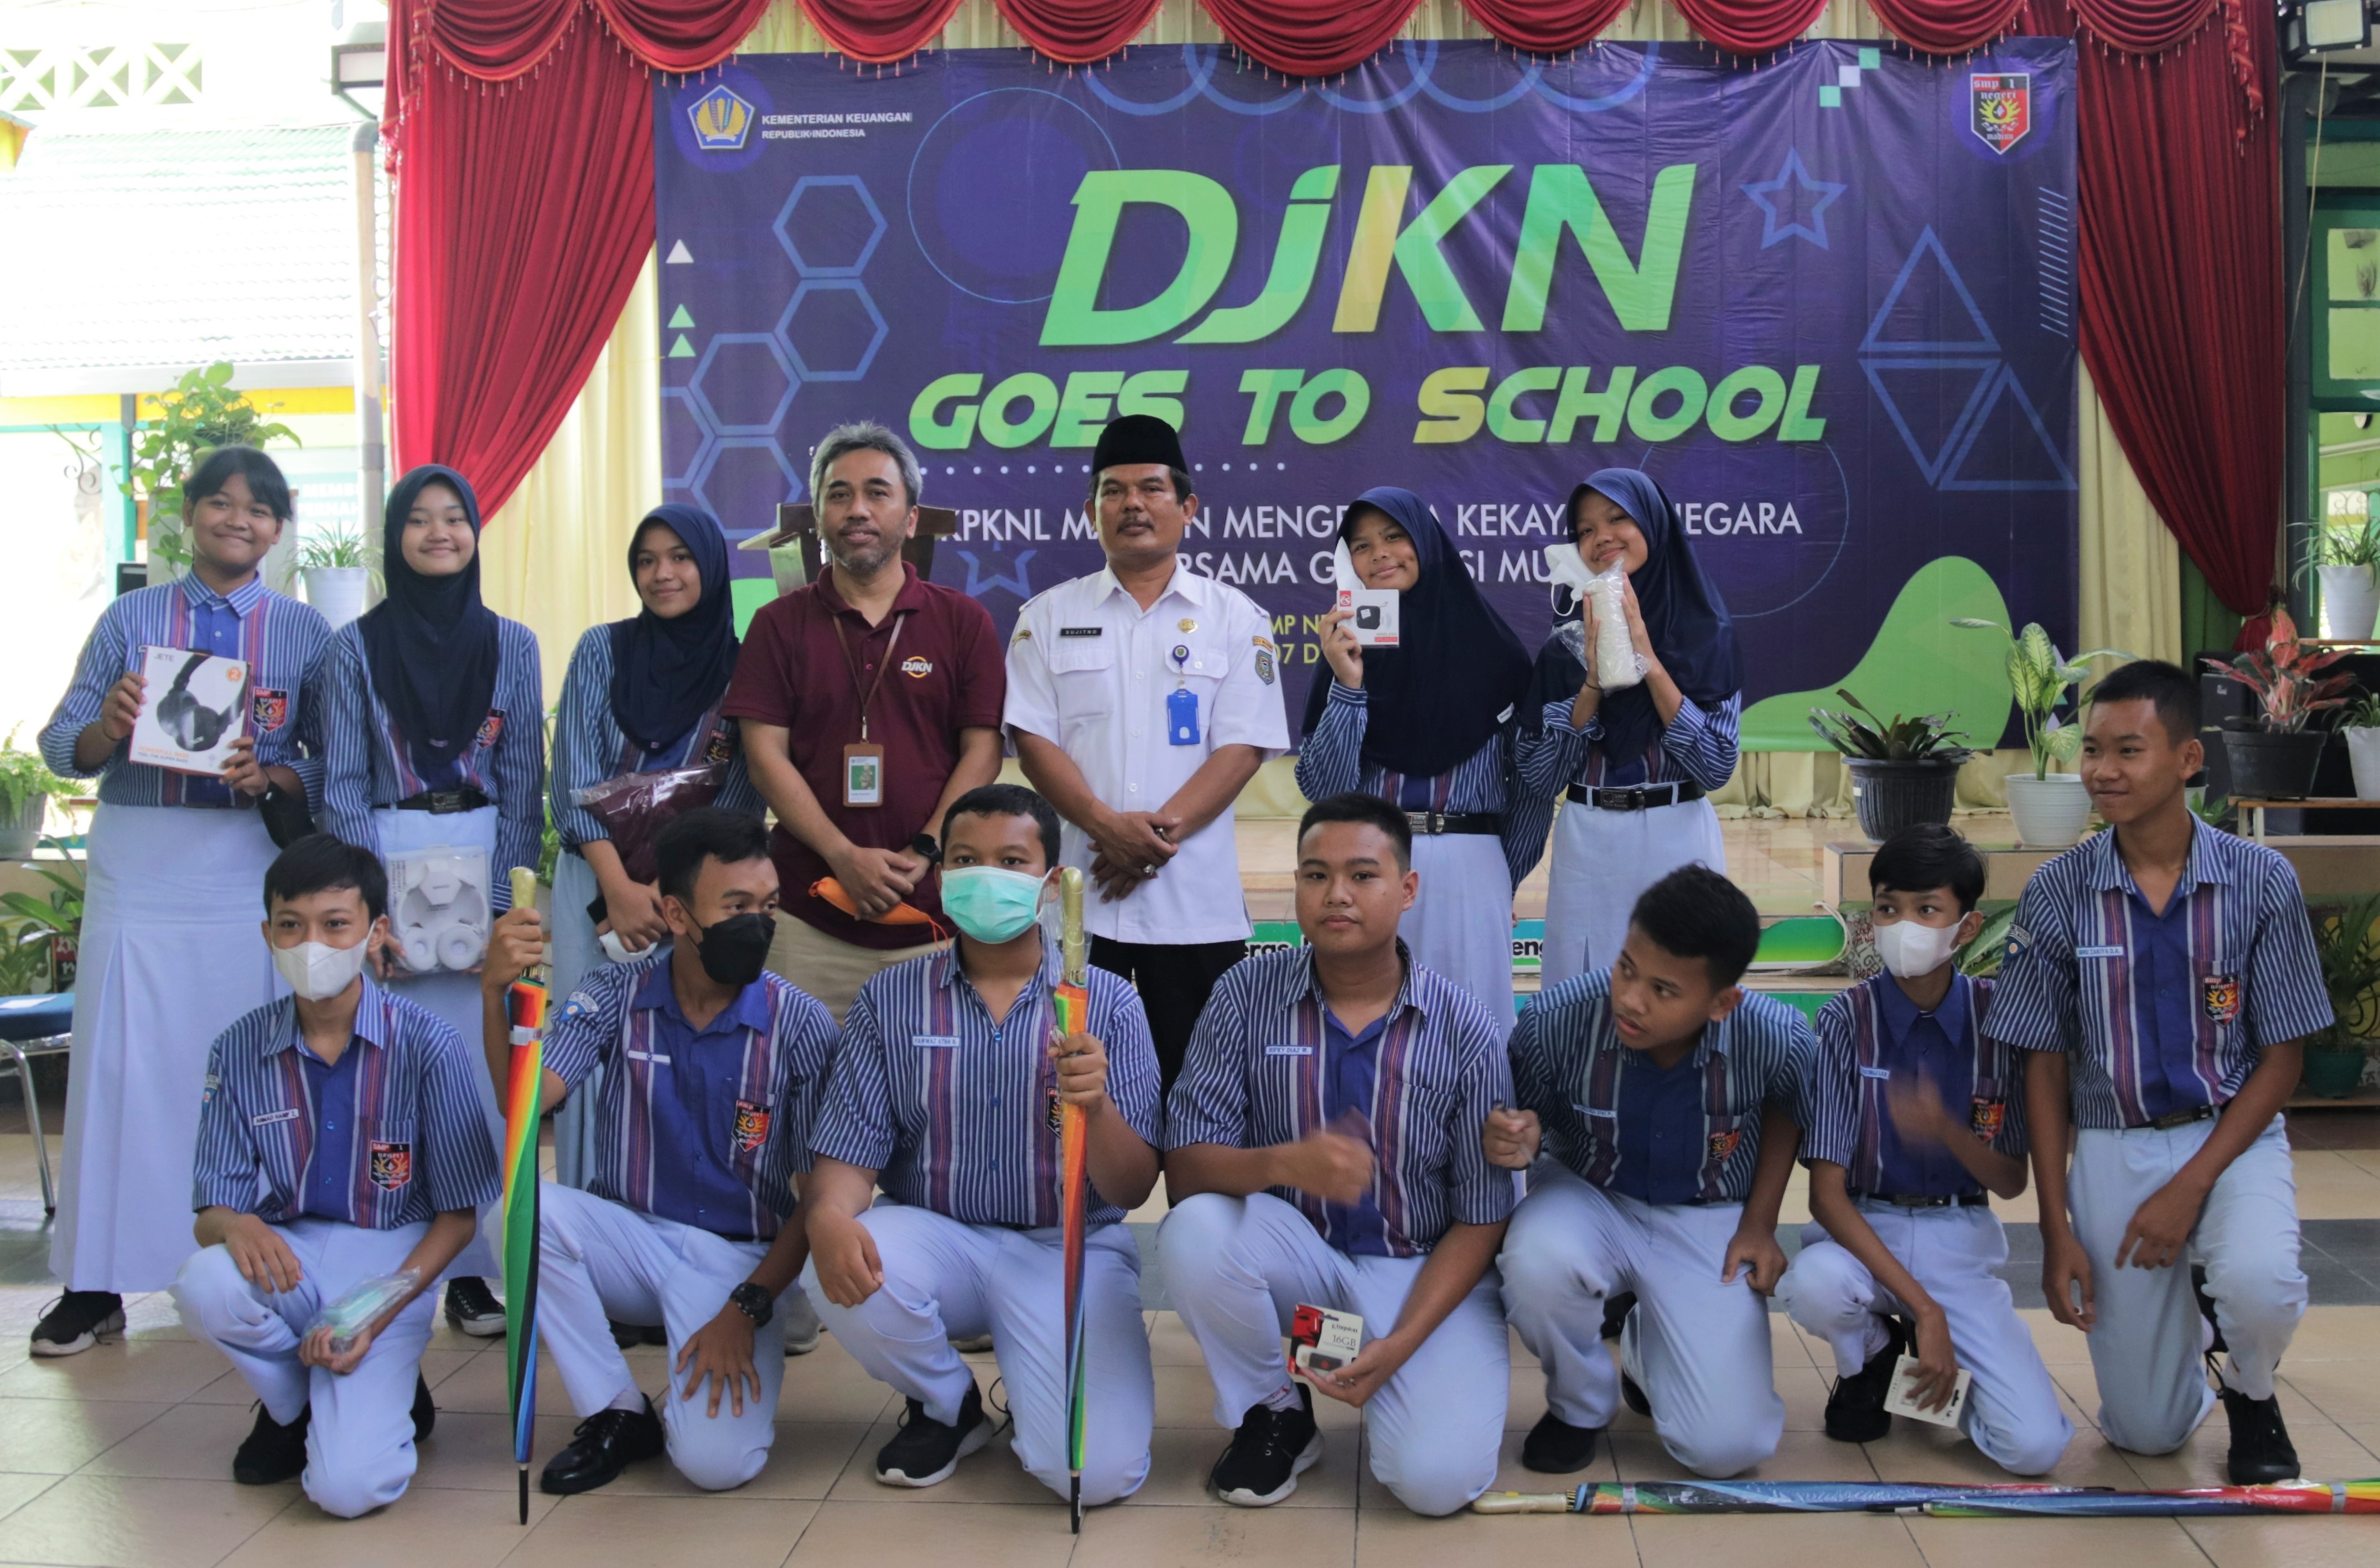 DJKN Goes To School SMP Negeri 1 Madiun:  Mengenalkan Tusi  DJKN sebagai Pengelola Aset Negara kepada Generasi Z 